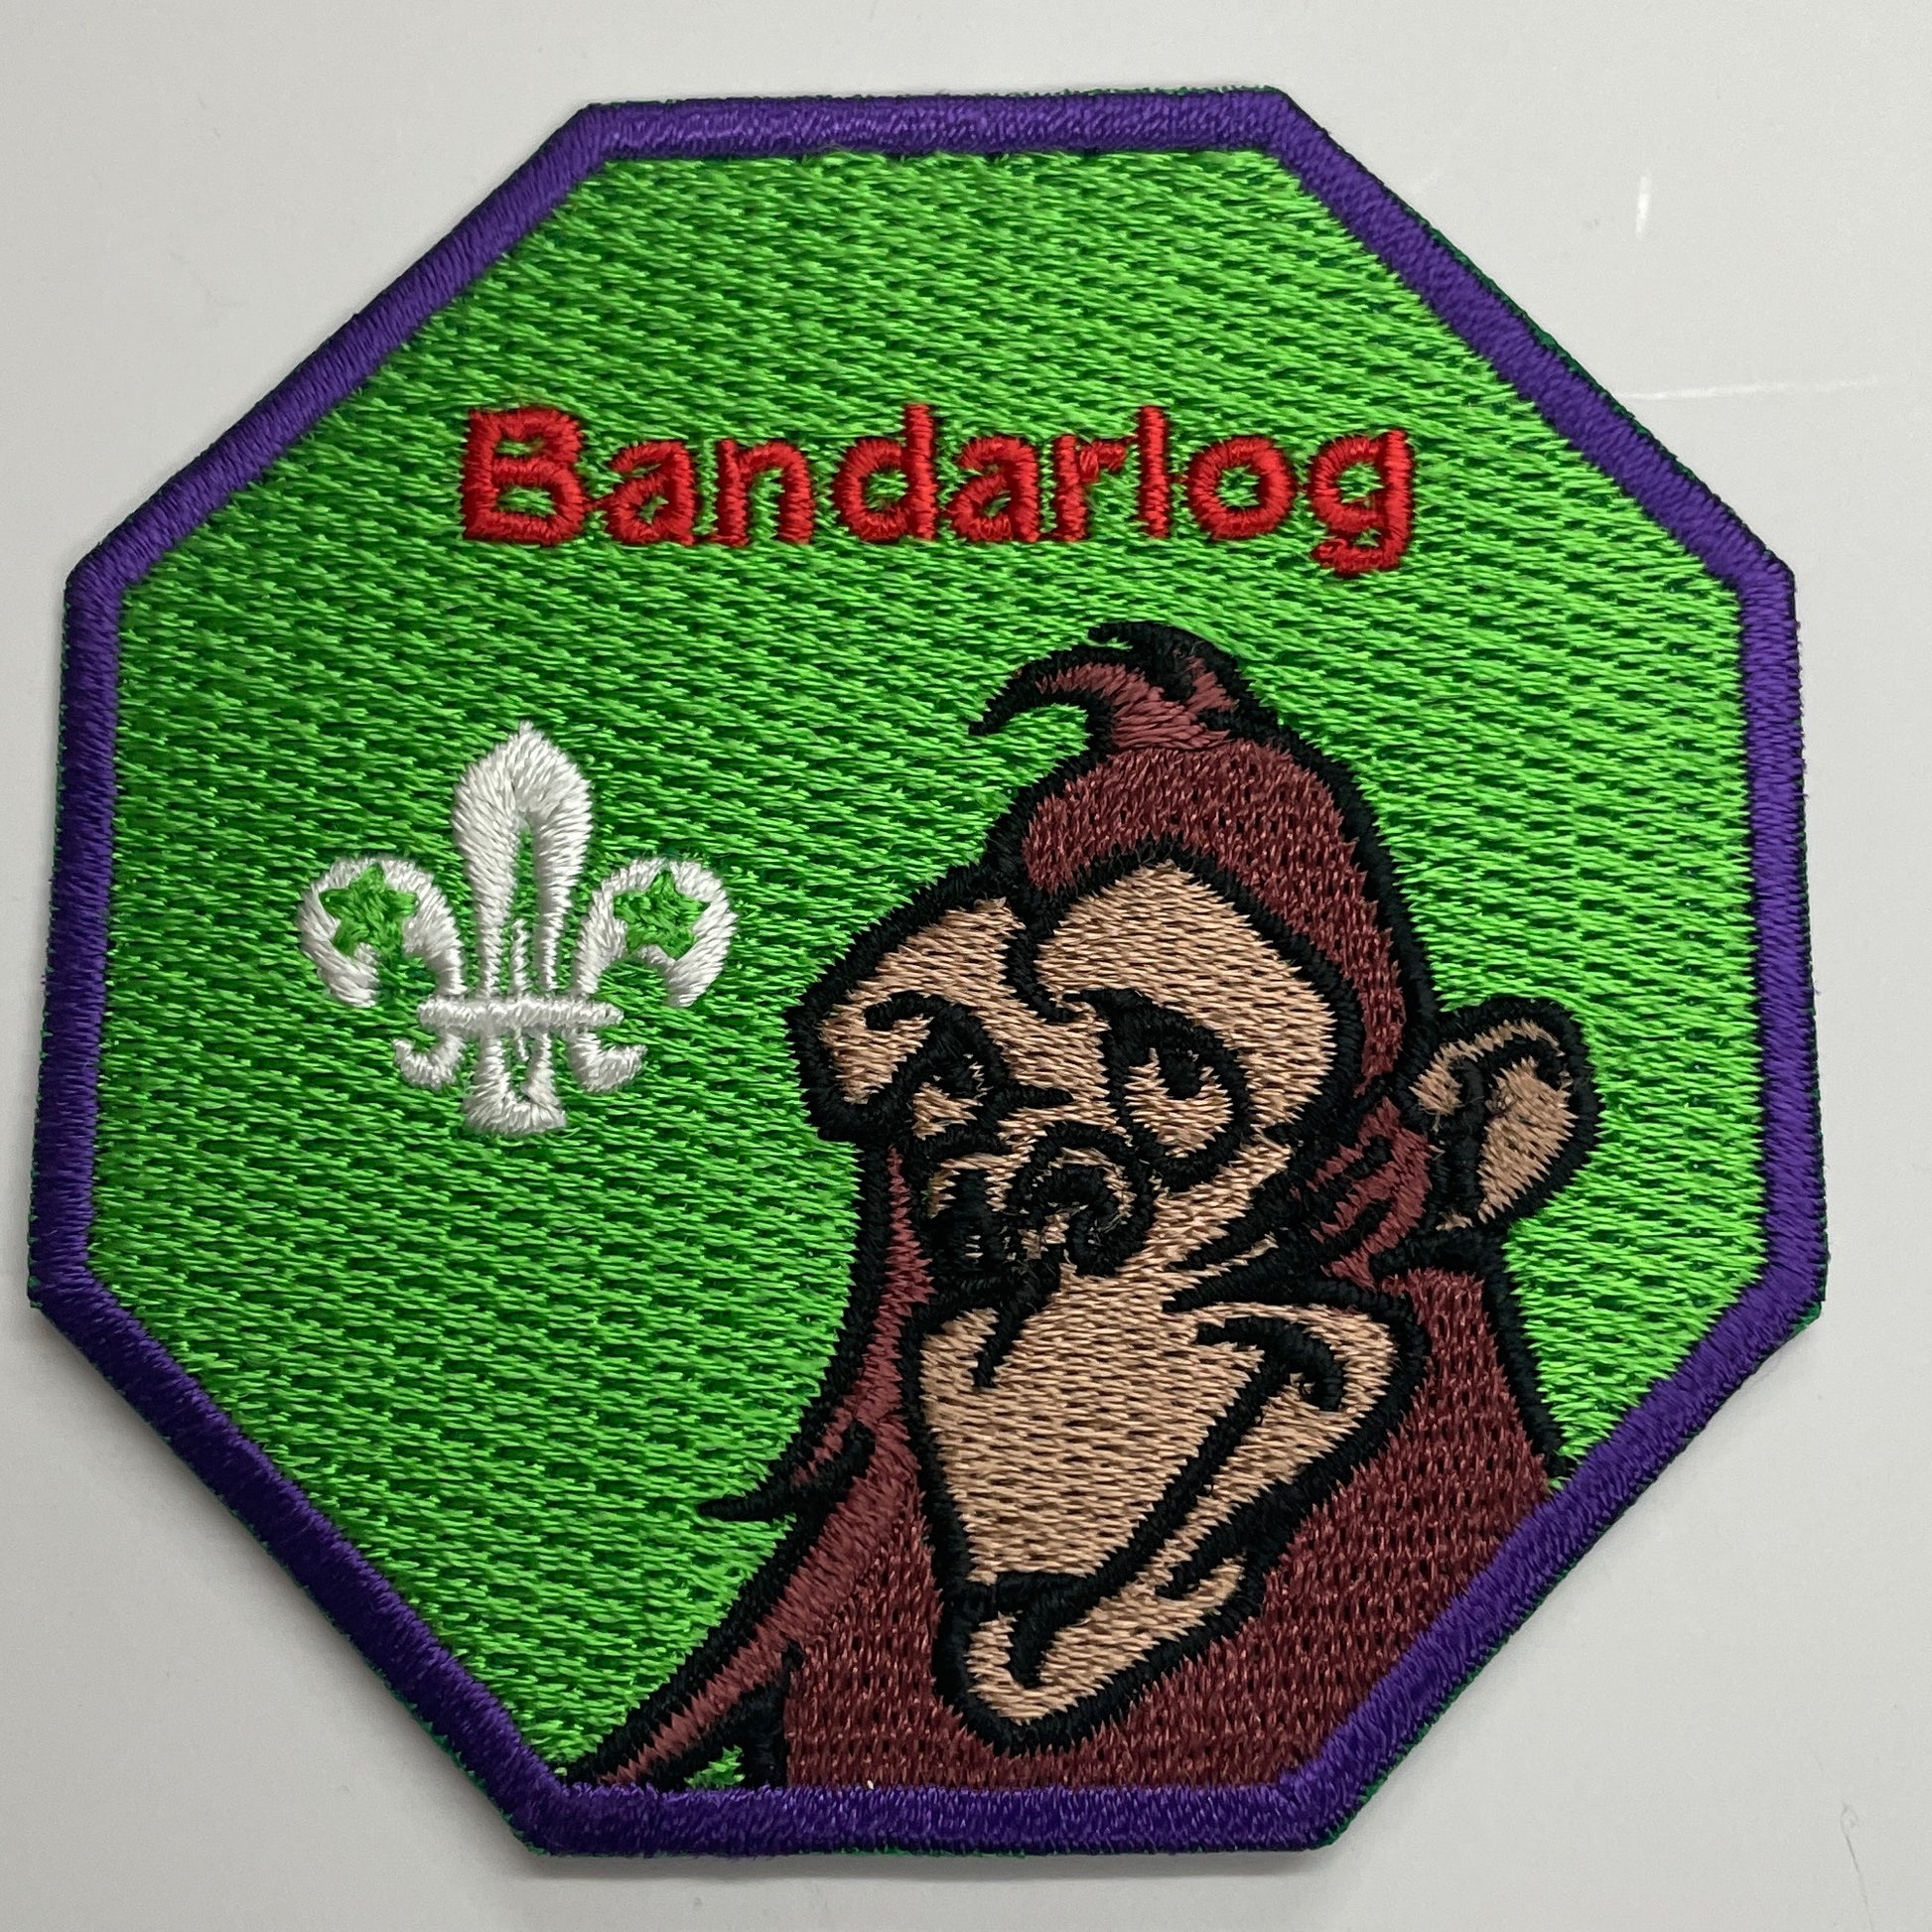 Bandarlog Fun Badge